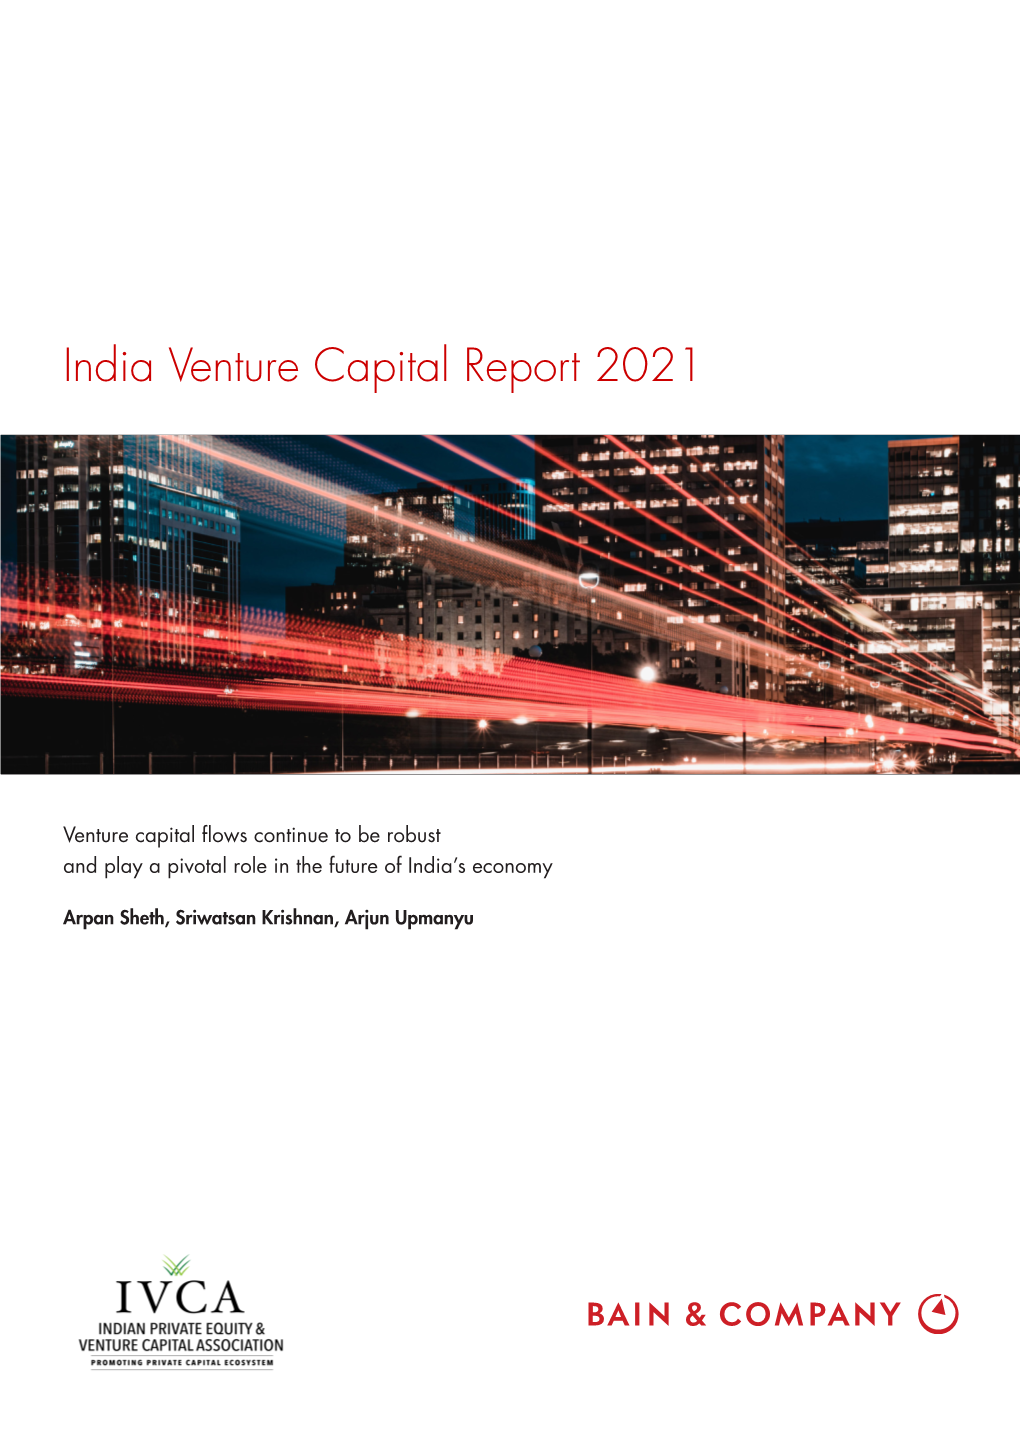 India Venture Capital Report 2021 (Pdf)